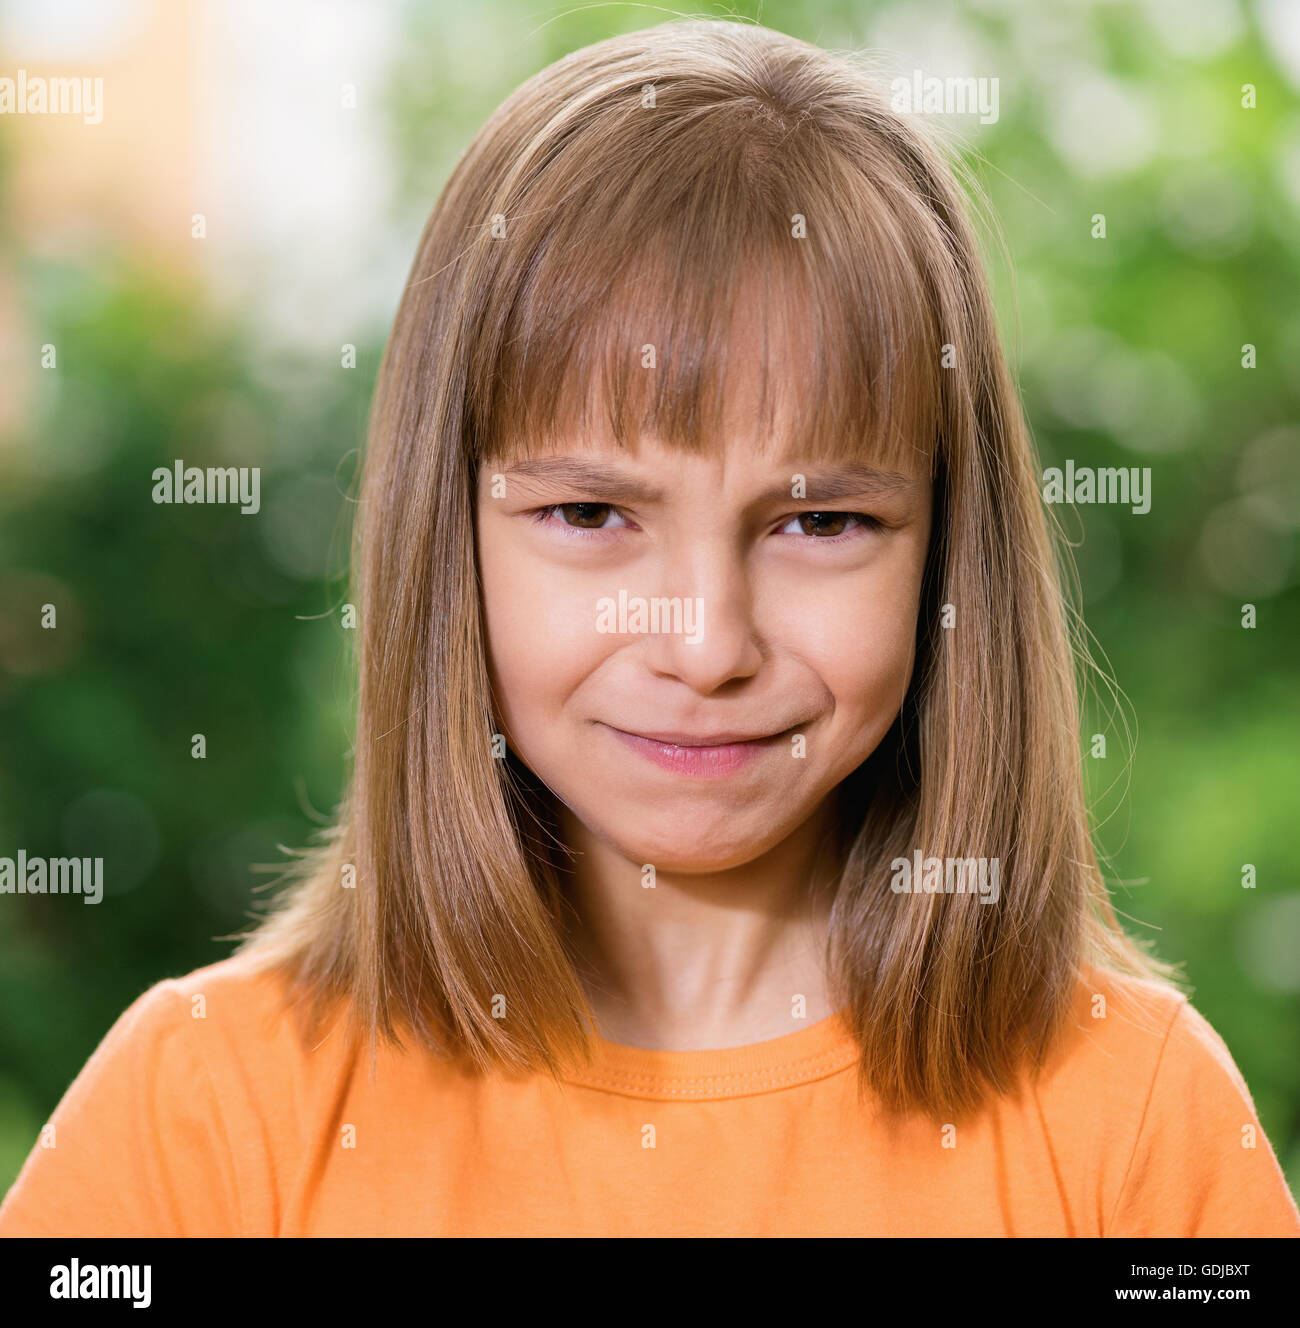 Portrait of little girl Stock Photo